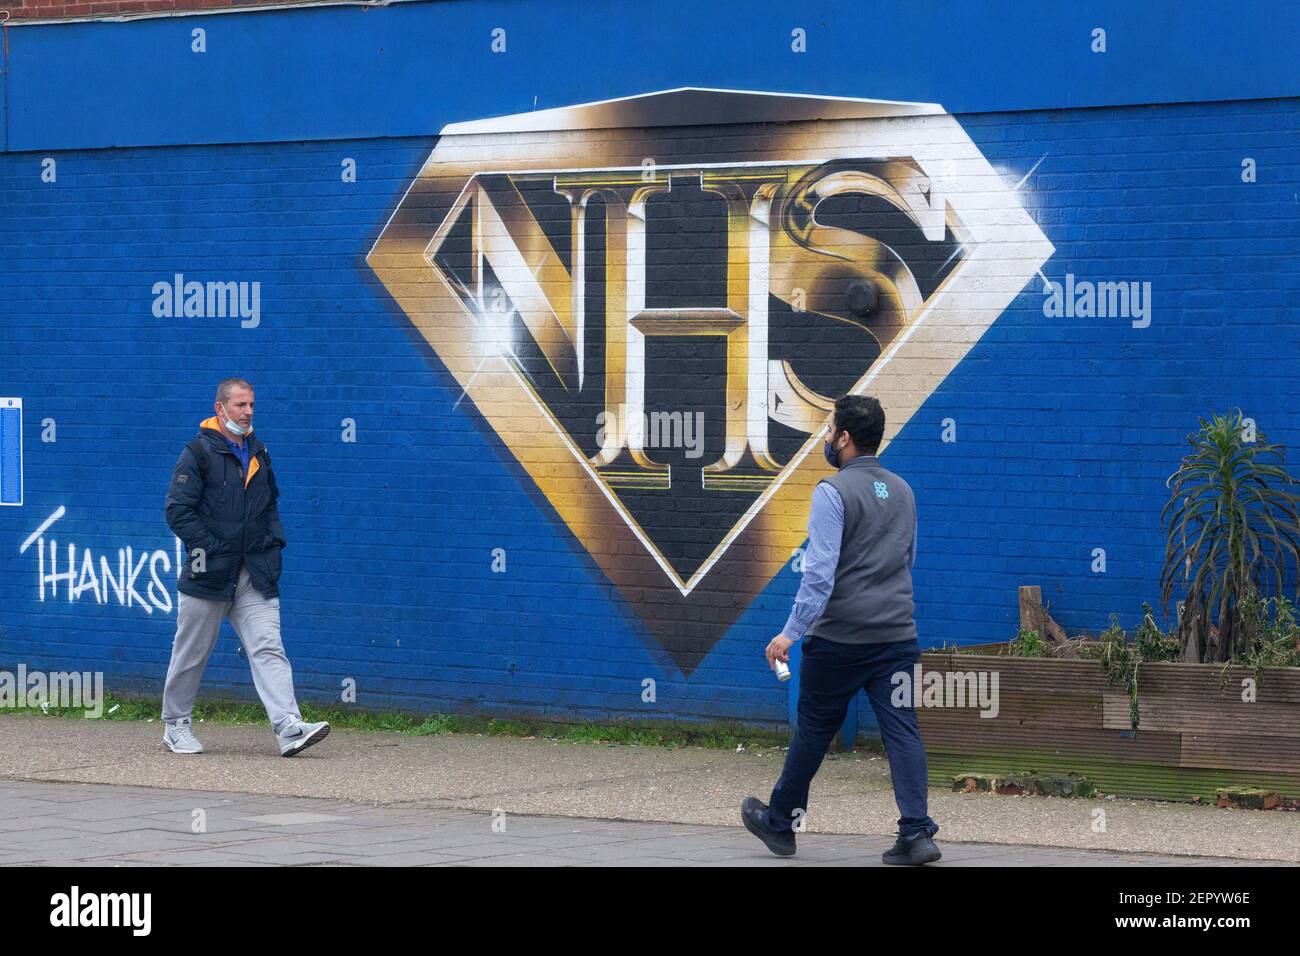 London, Großbritannien, 28. Februar 2021: Ein Wandgemälde in Tulse Hill zeigt das NHS-Logo im Stil eines Superhelden-Emblems. Passanten nehmen Übung oder Schlange für den Co-op-Laden um die Ecke, einige tragen Gesichtsmasken und alle sozial distanziert. Anna Watson/Alamy Live News Stockfoto